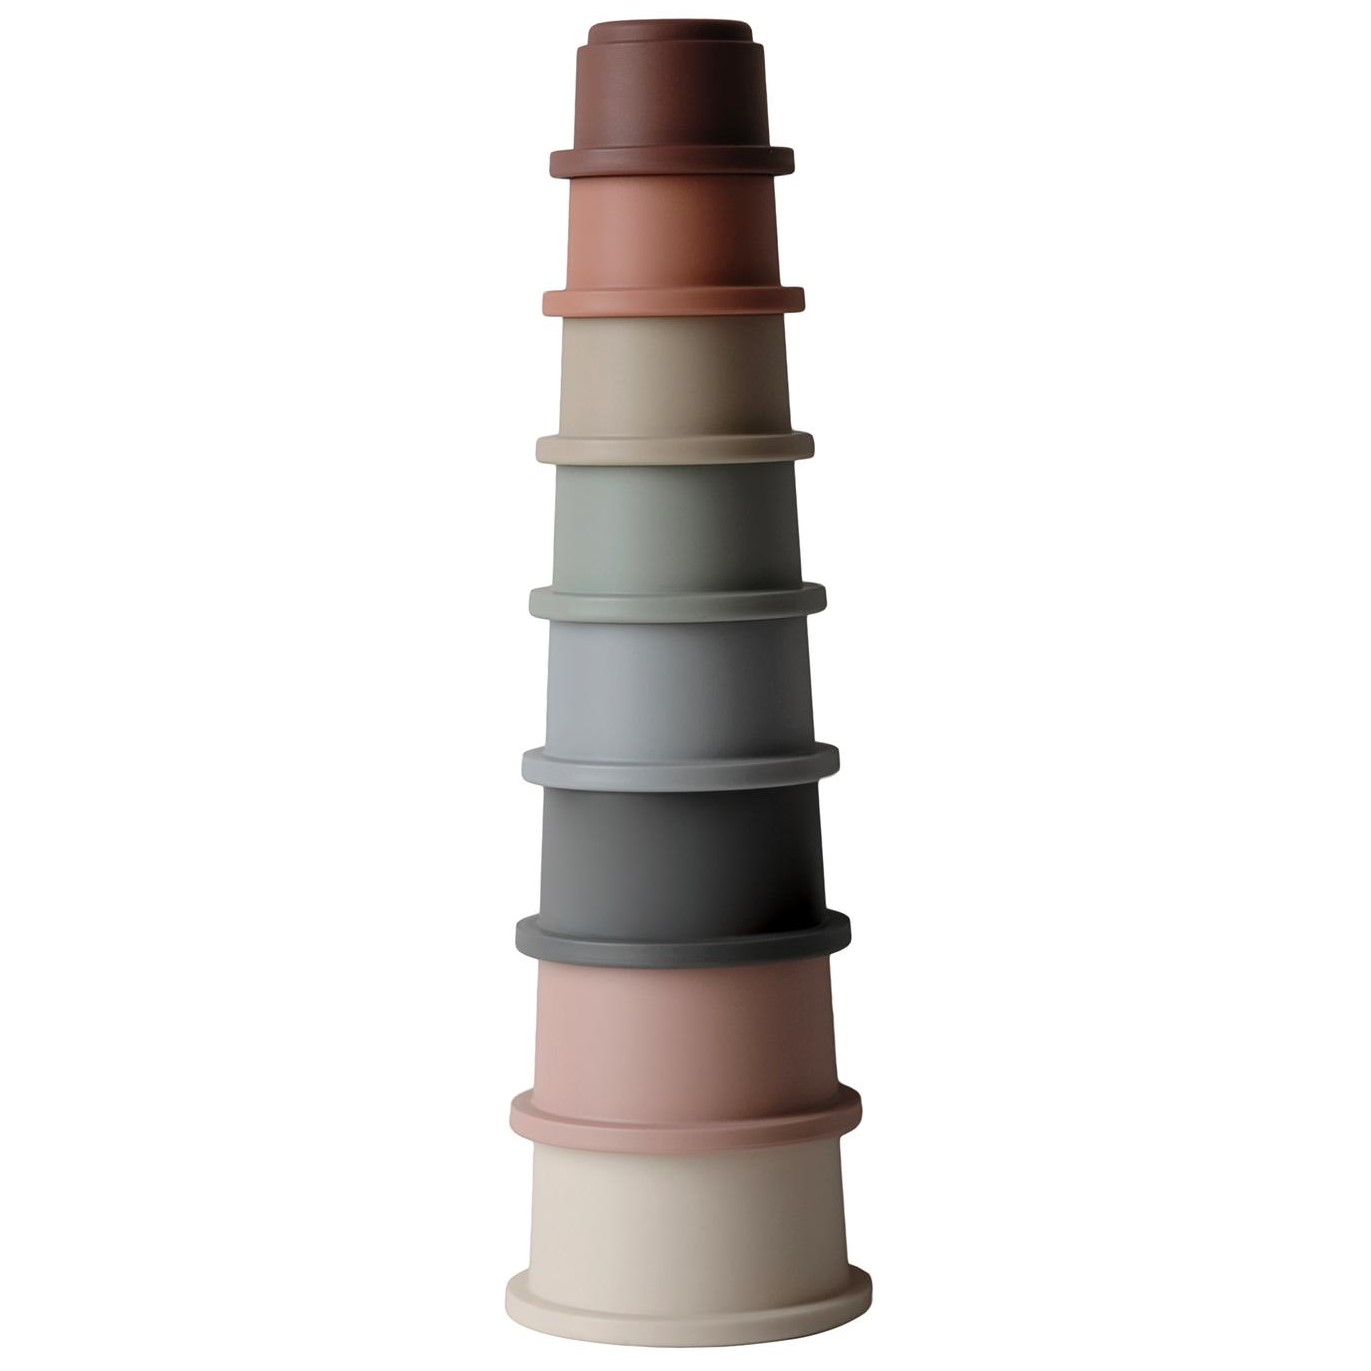 Mushie stacking cups – original